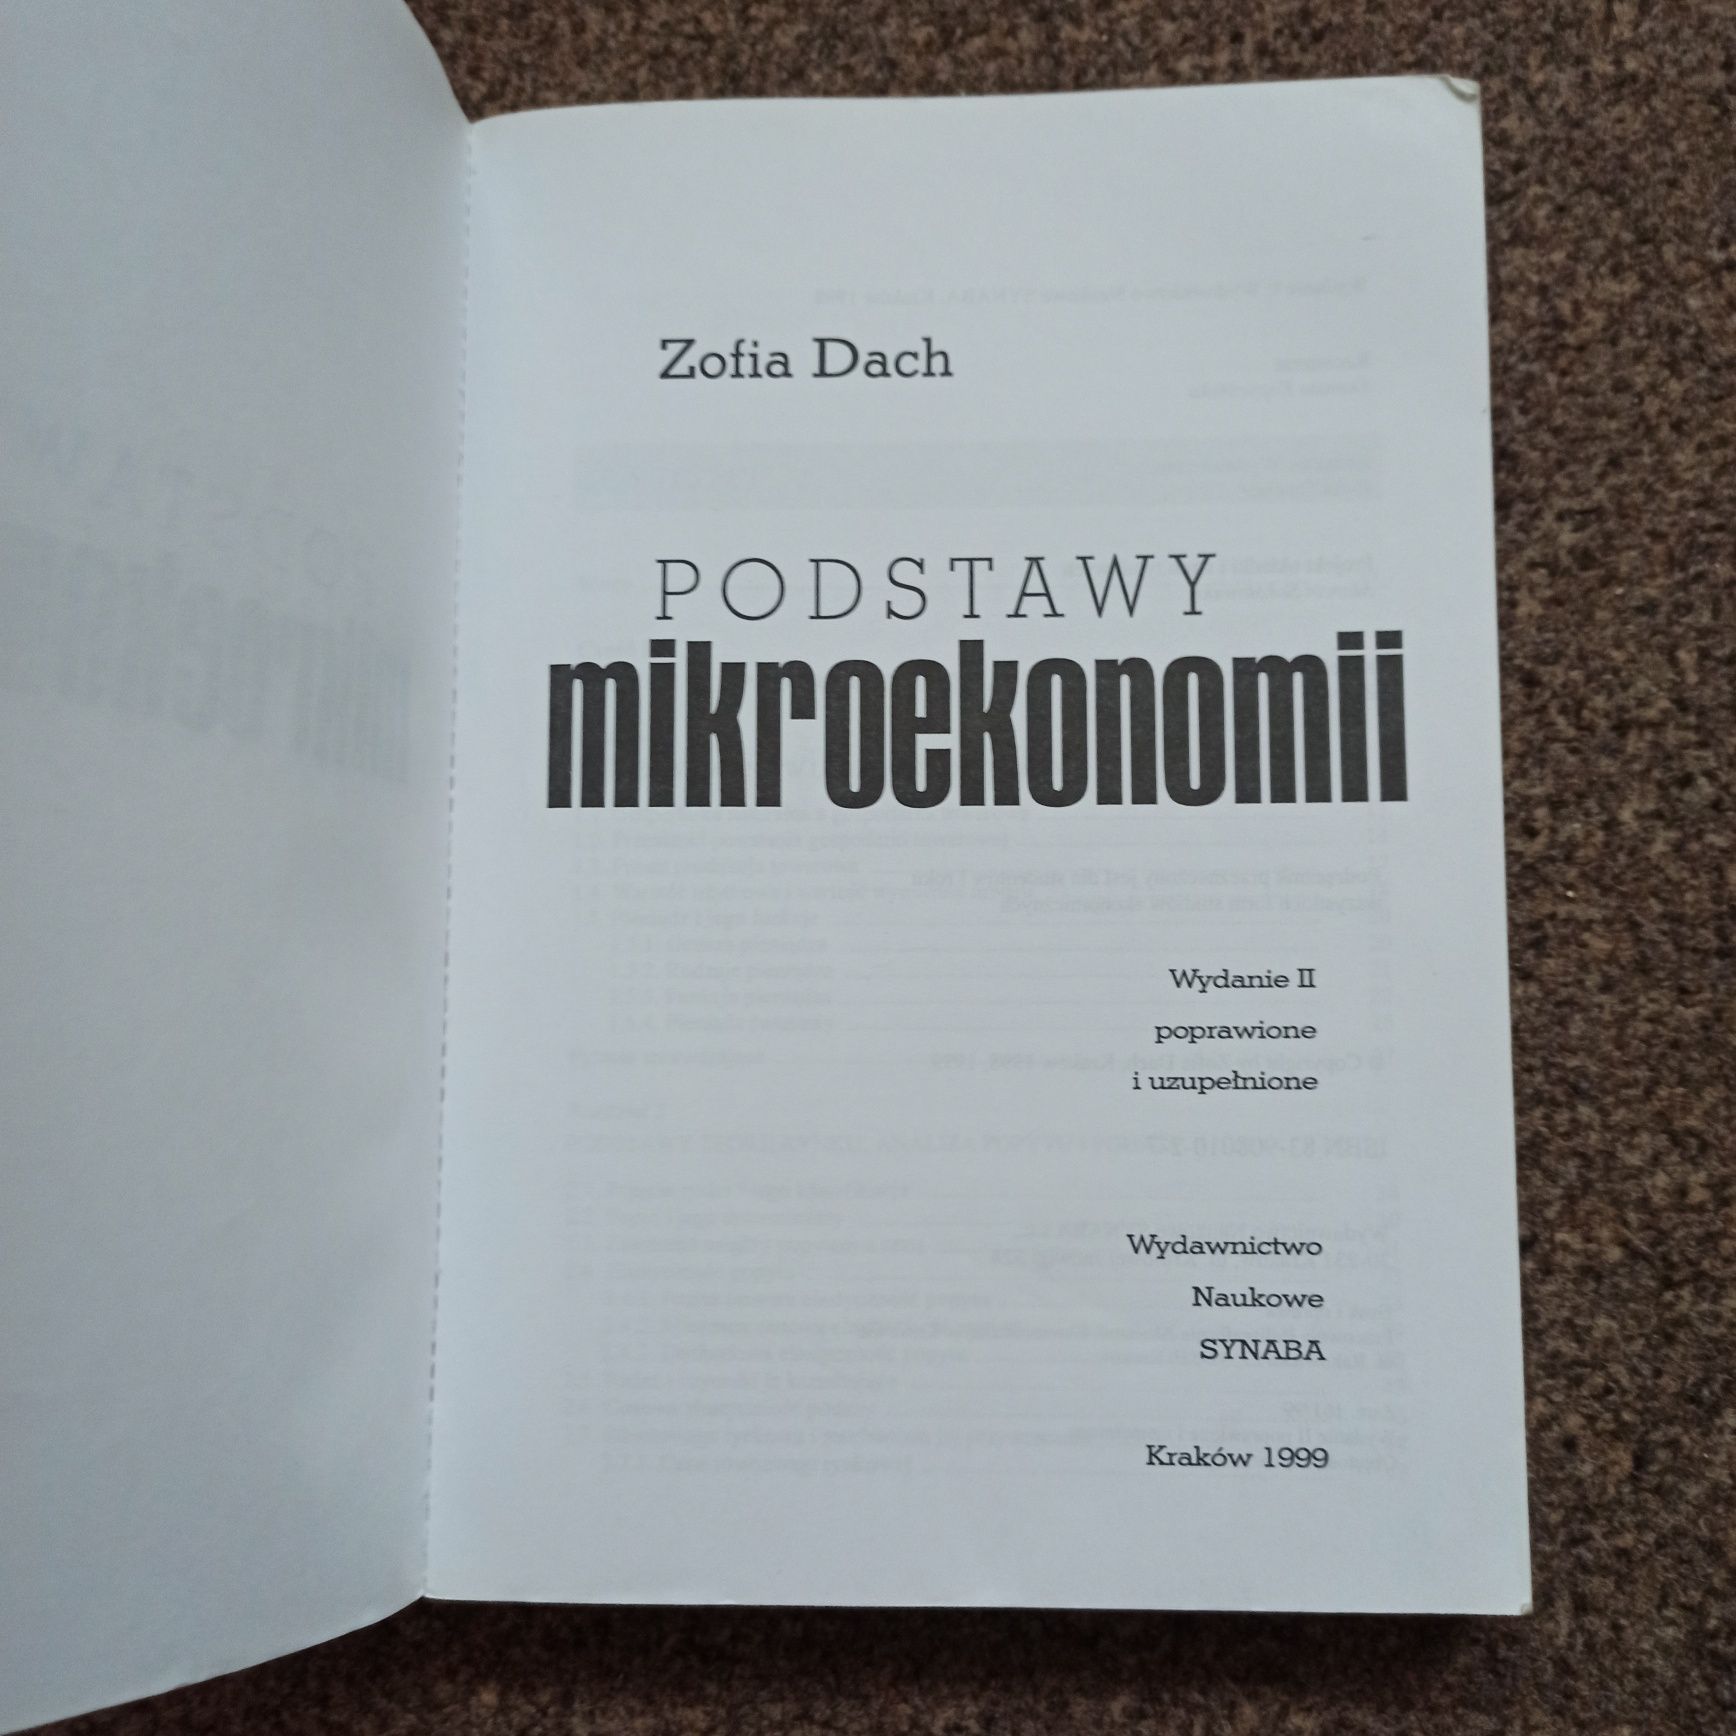 Podstawy Mikroekonomii - Zofia Dach 
Wydawnictwo Naukowe SYNABA